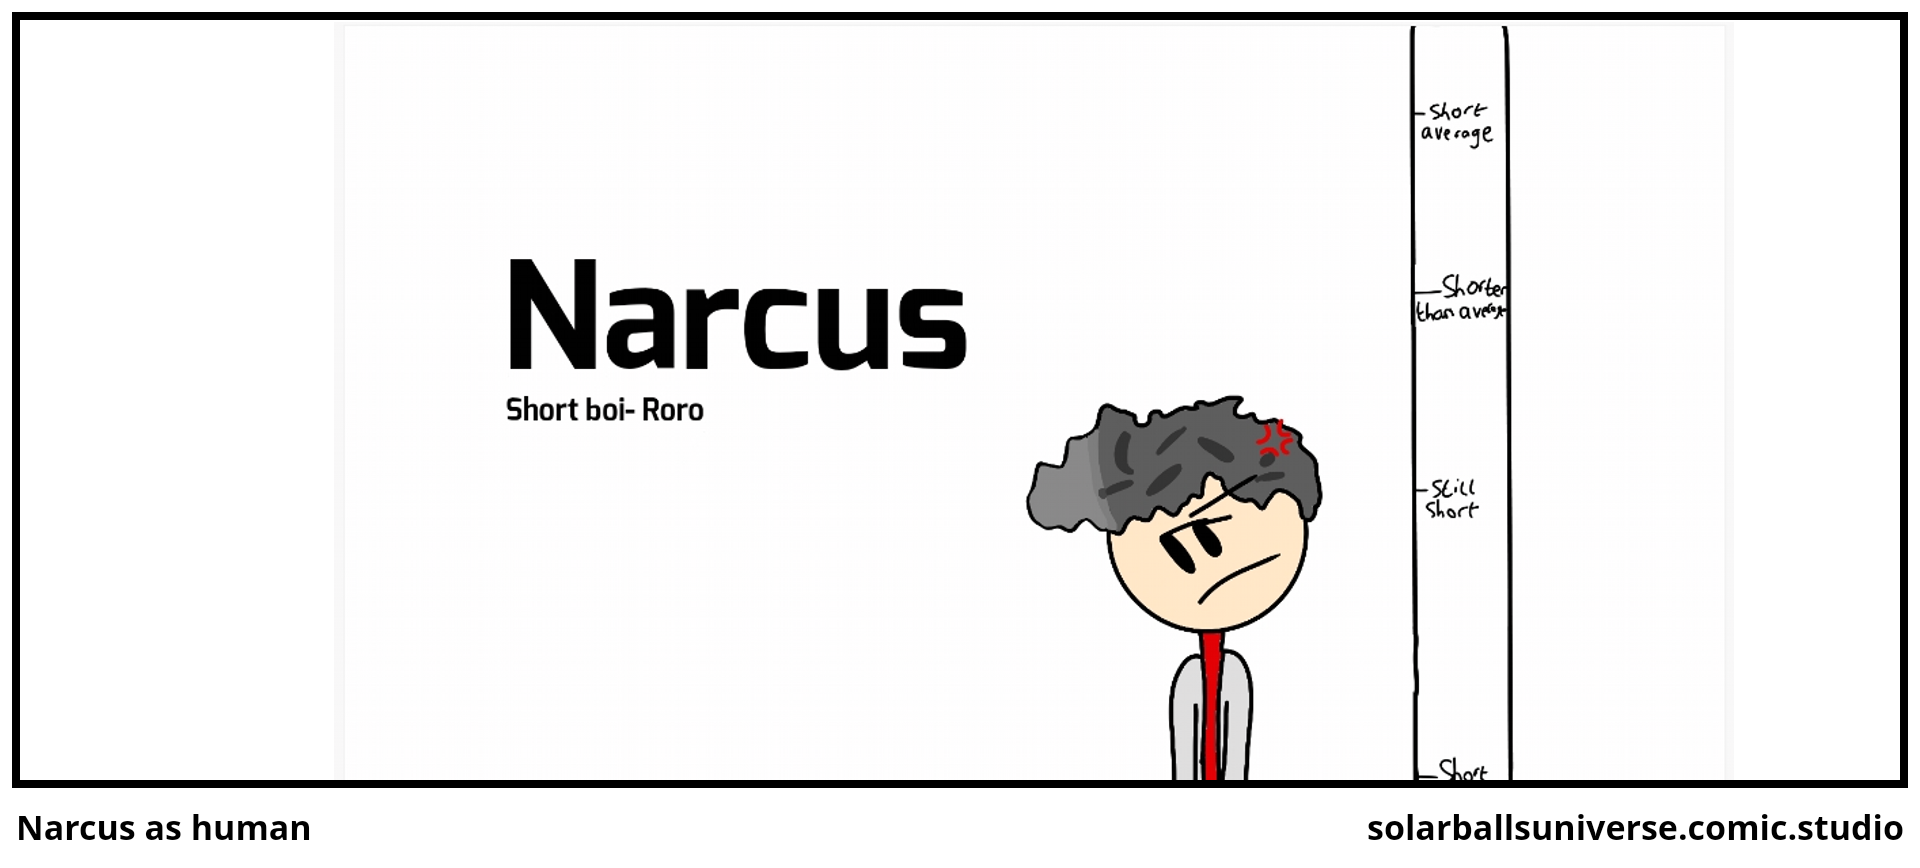 Narcus as human